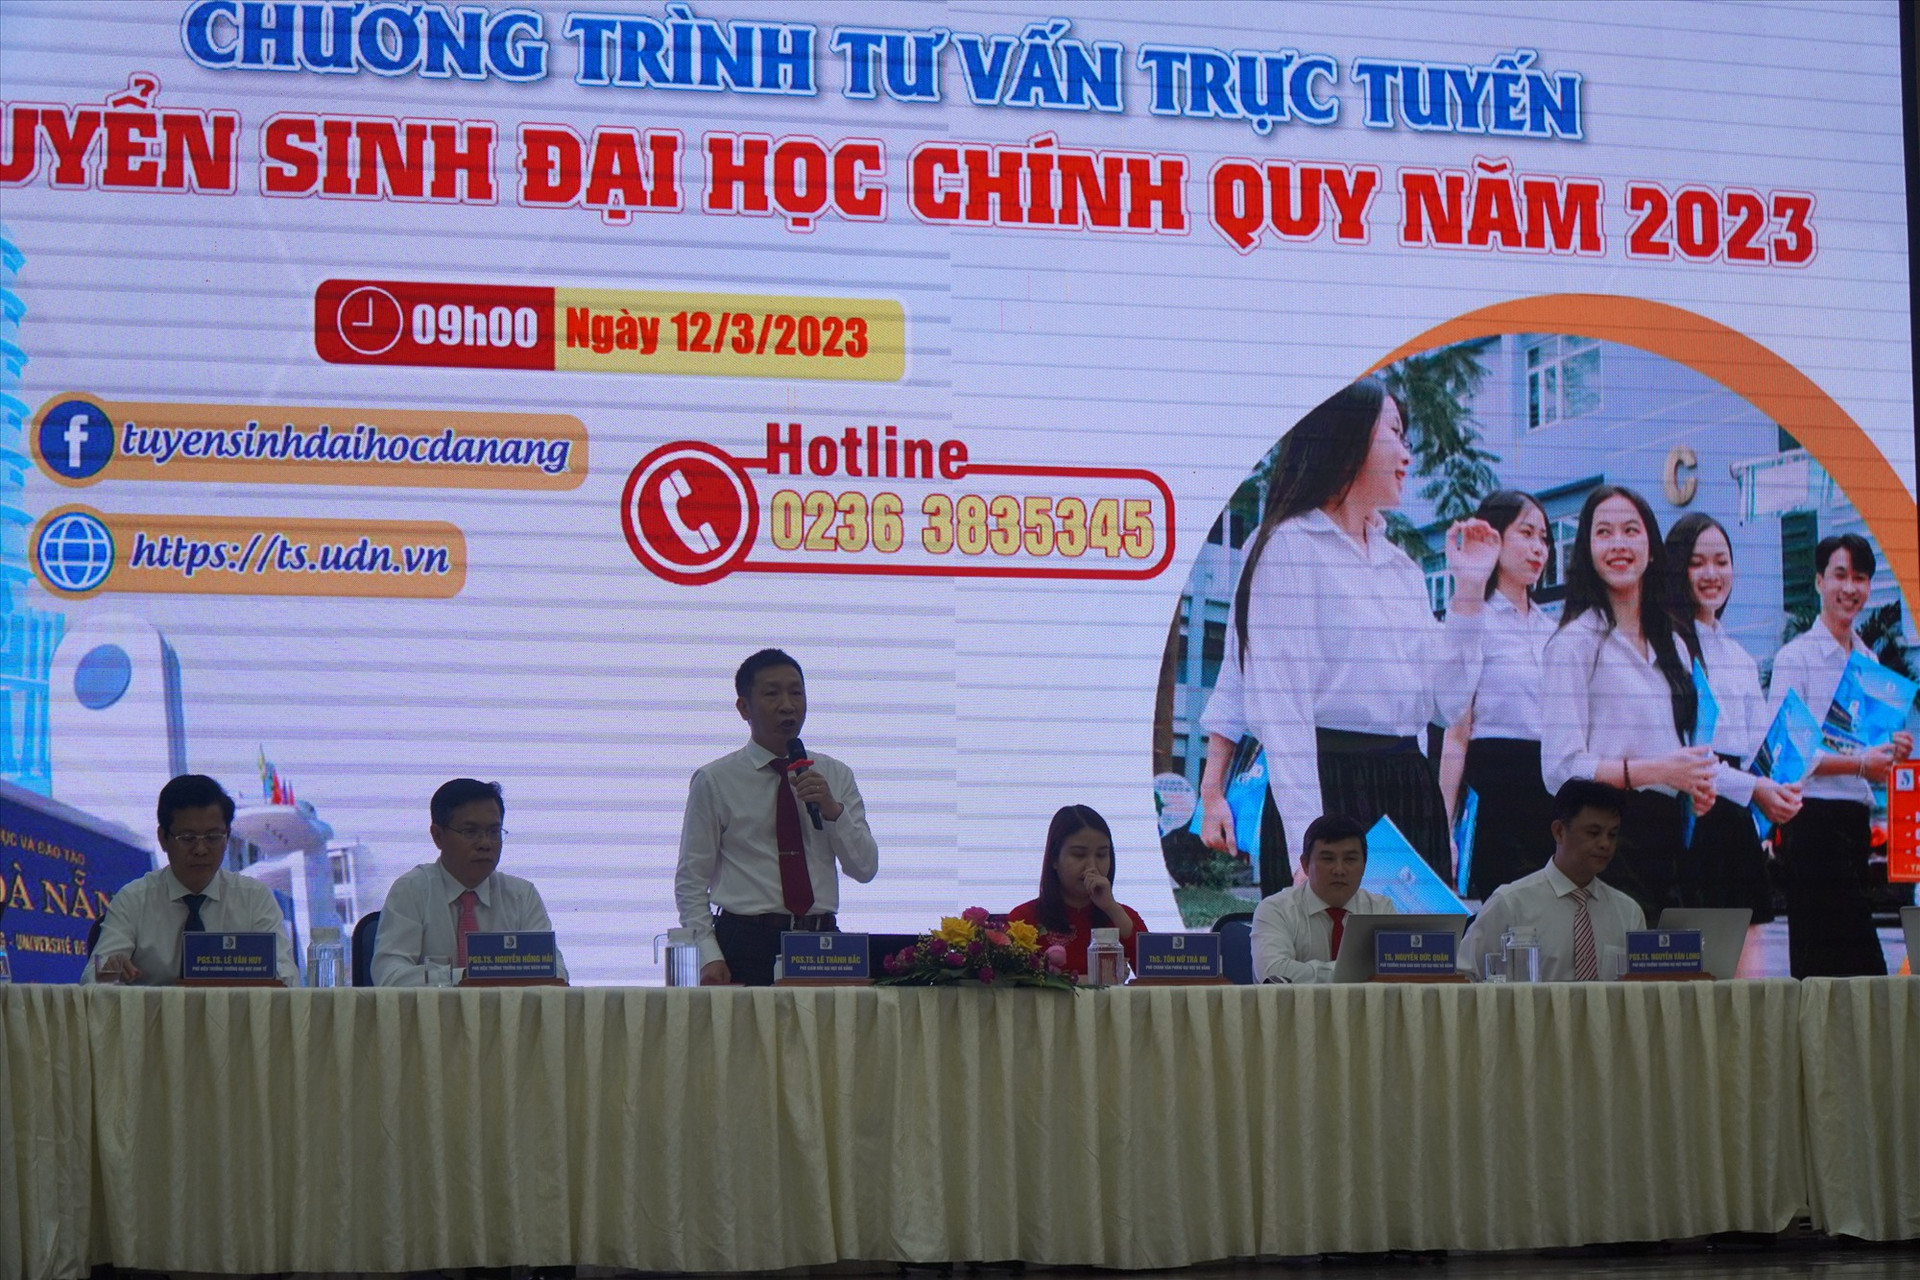 PGS.TS Lê Thành Bắc -Phó Giám đốc ĐH Đà Nẵng phát biểu tại chương trình tư vấn trực tuyến tuyển sinh ĐH sáng 12/3. Ảnh NĐ